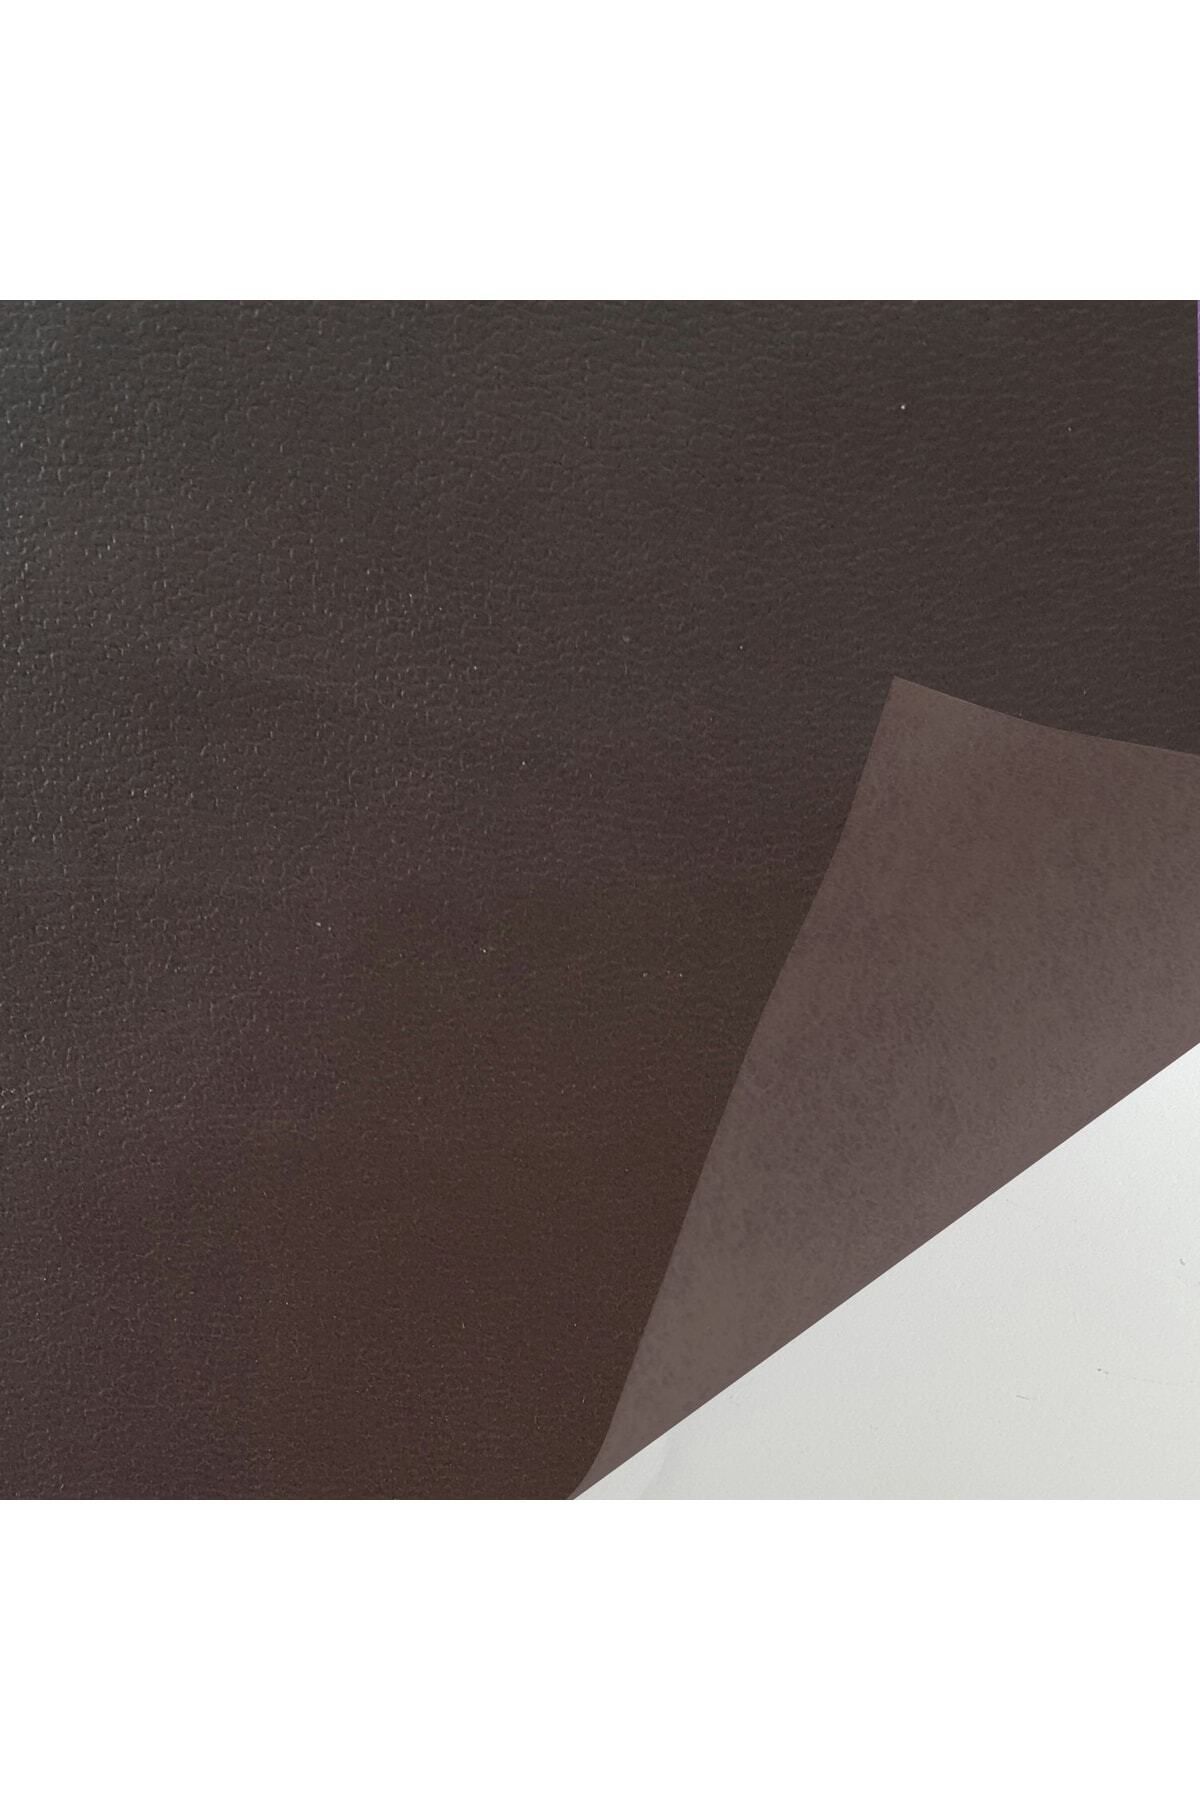 Genel Markalar Yapışkanlı Gerçek Suni Deri 45x100 Cm Renk Seçenekli Kahverengi